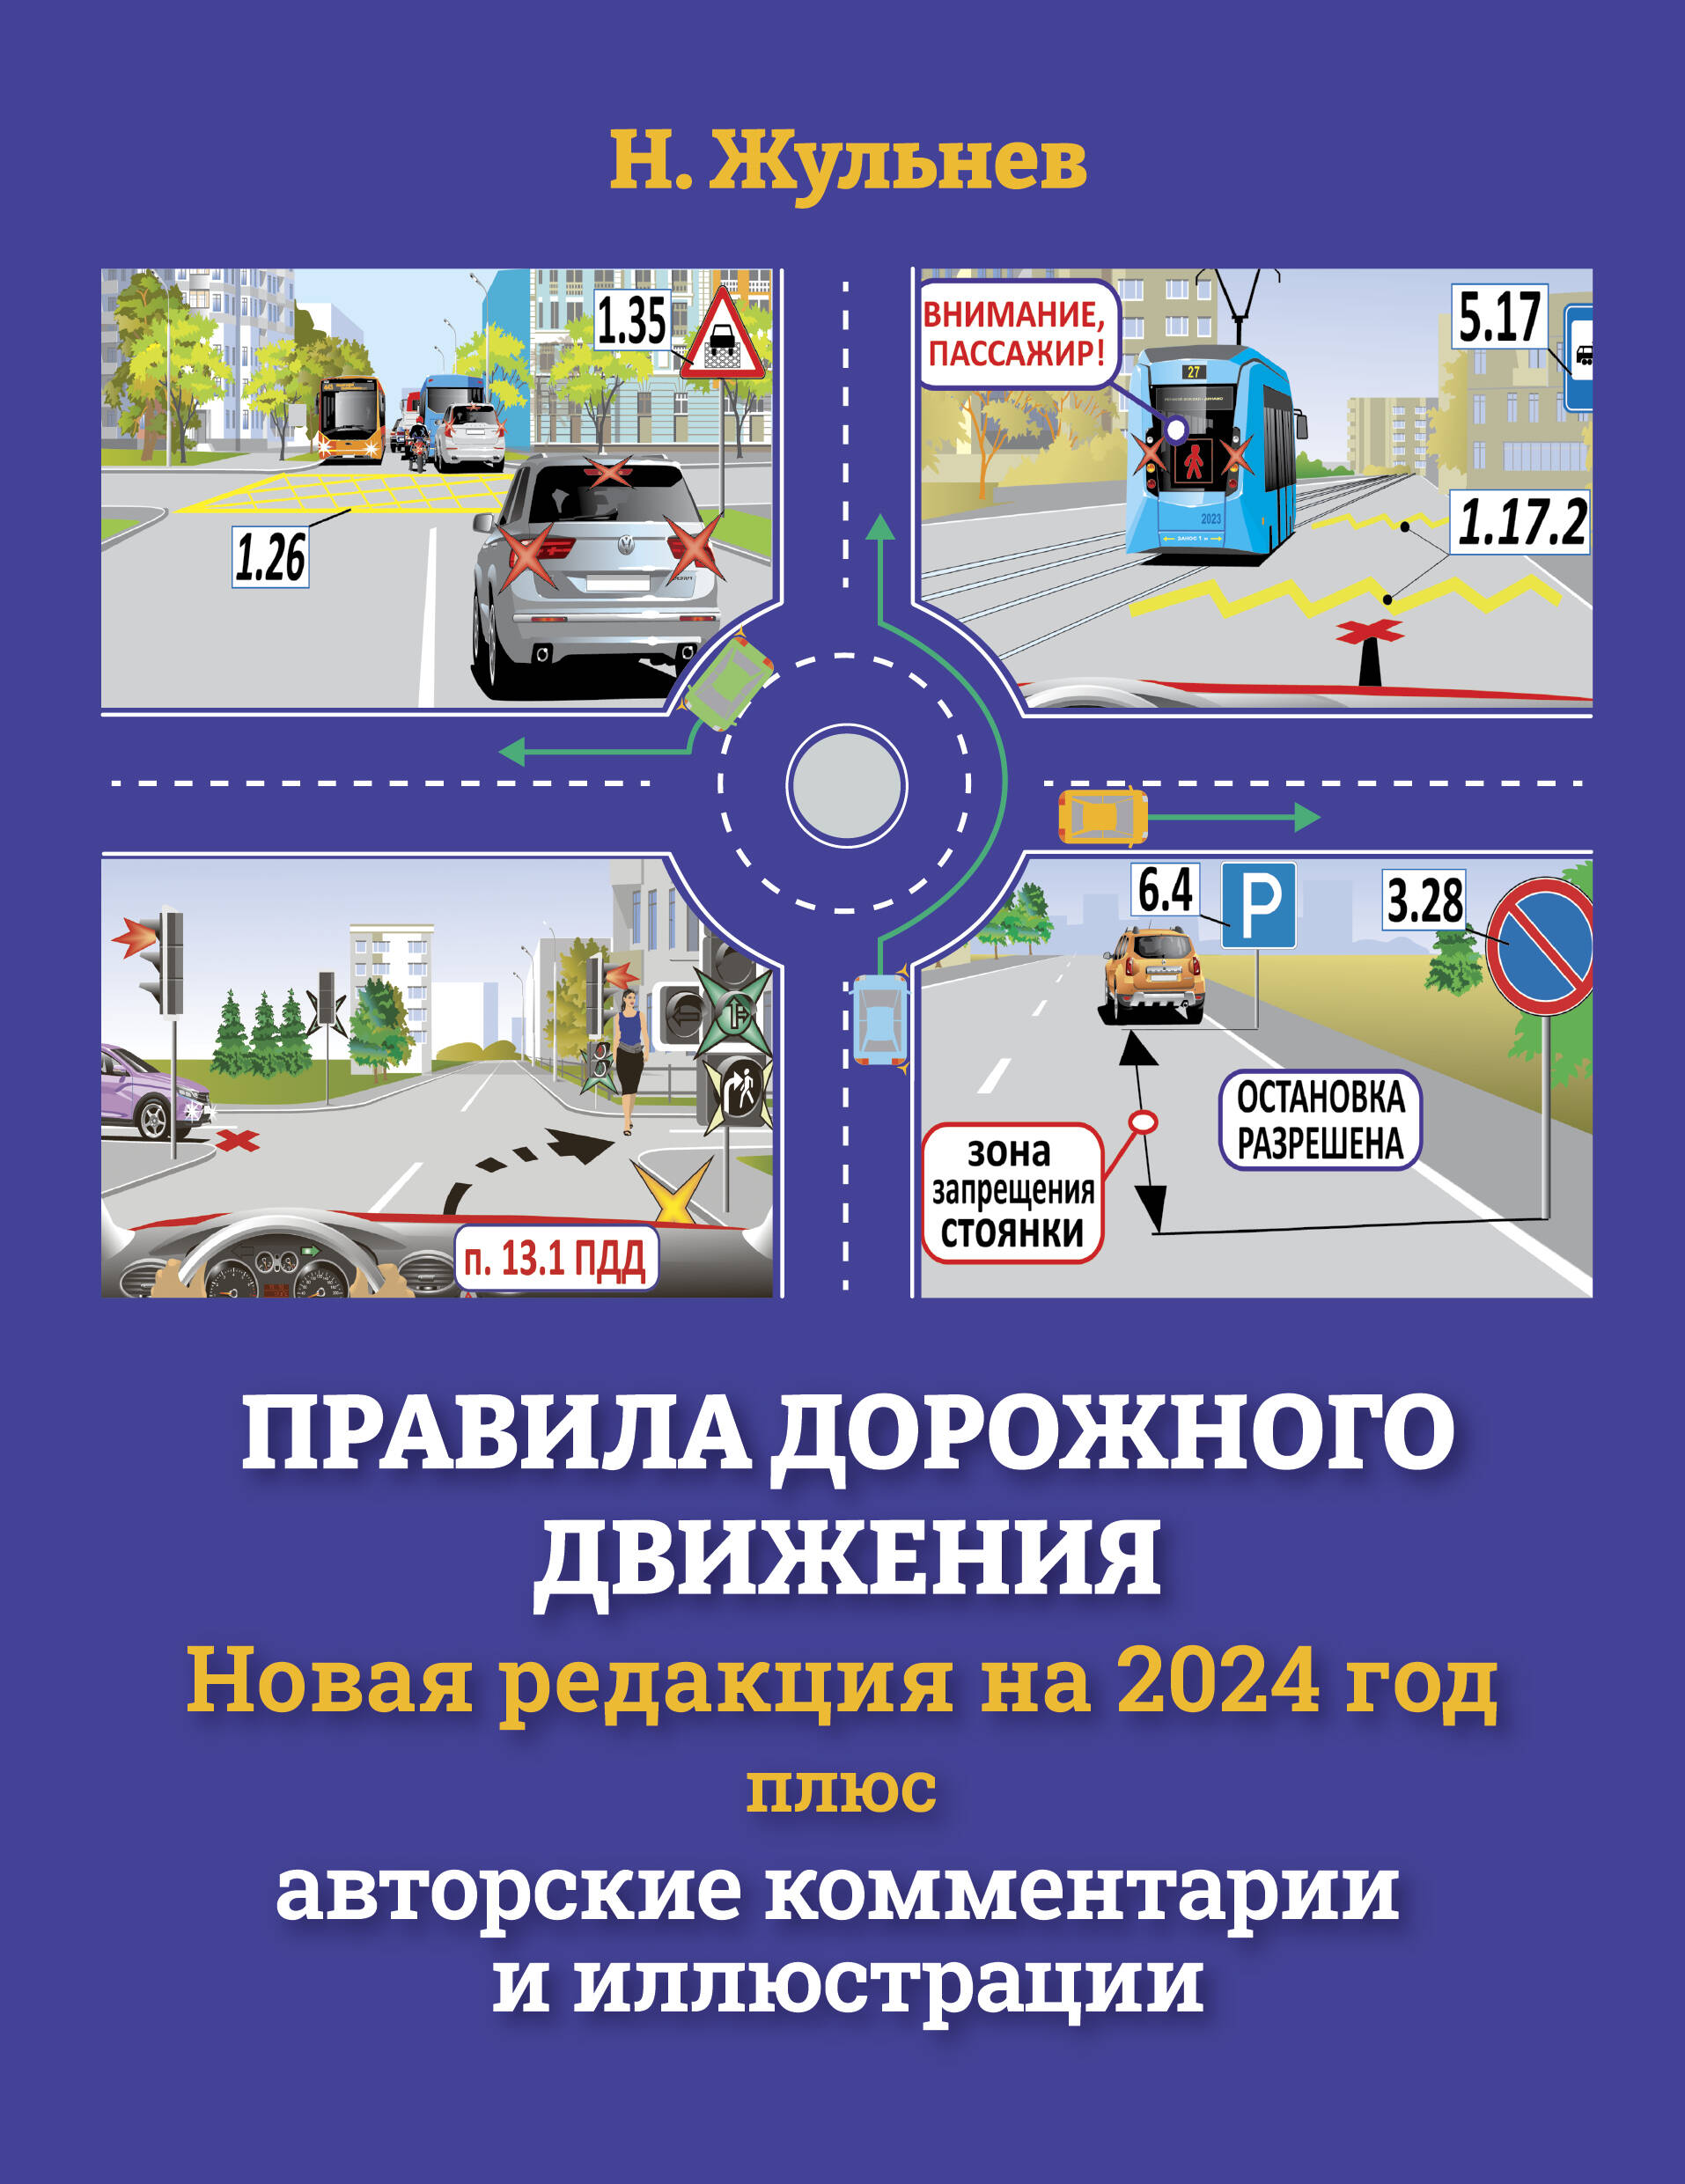 Жульнев Николай Яковлевич Правила дорожного движения на 2024 год плюс авторские комментарии и иллюстрации